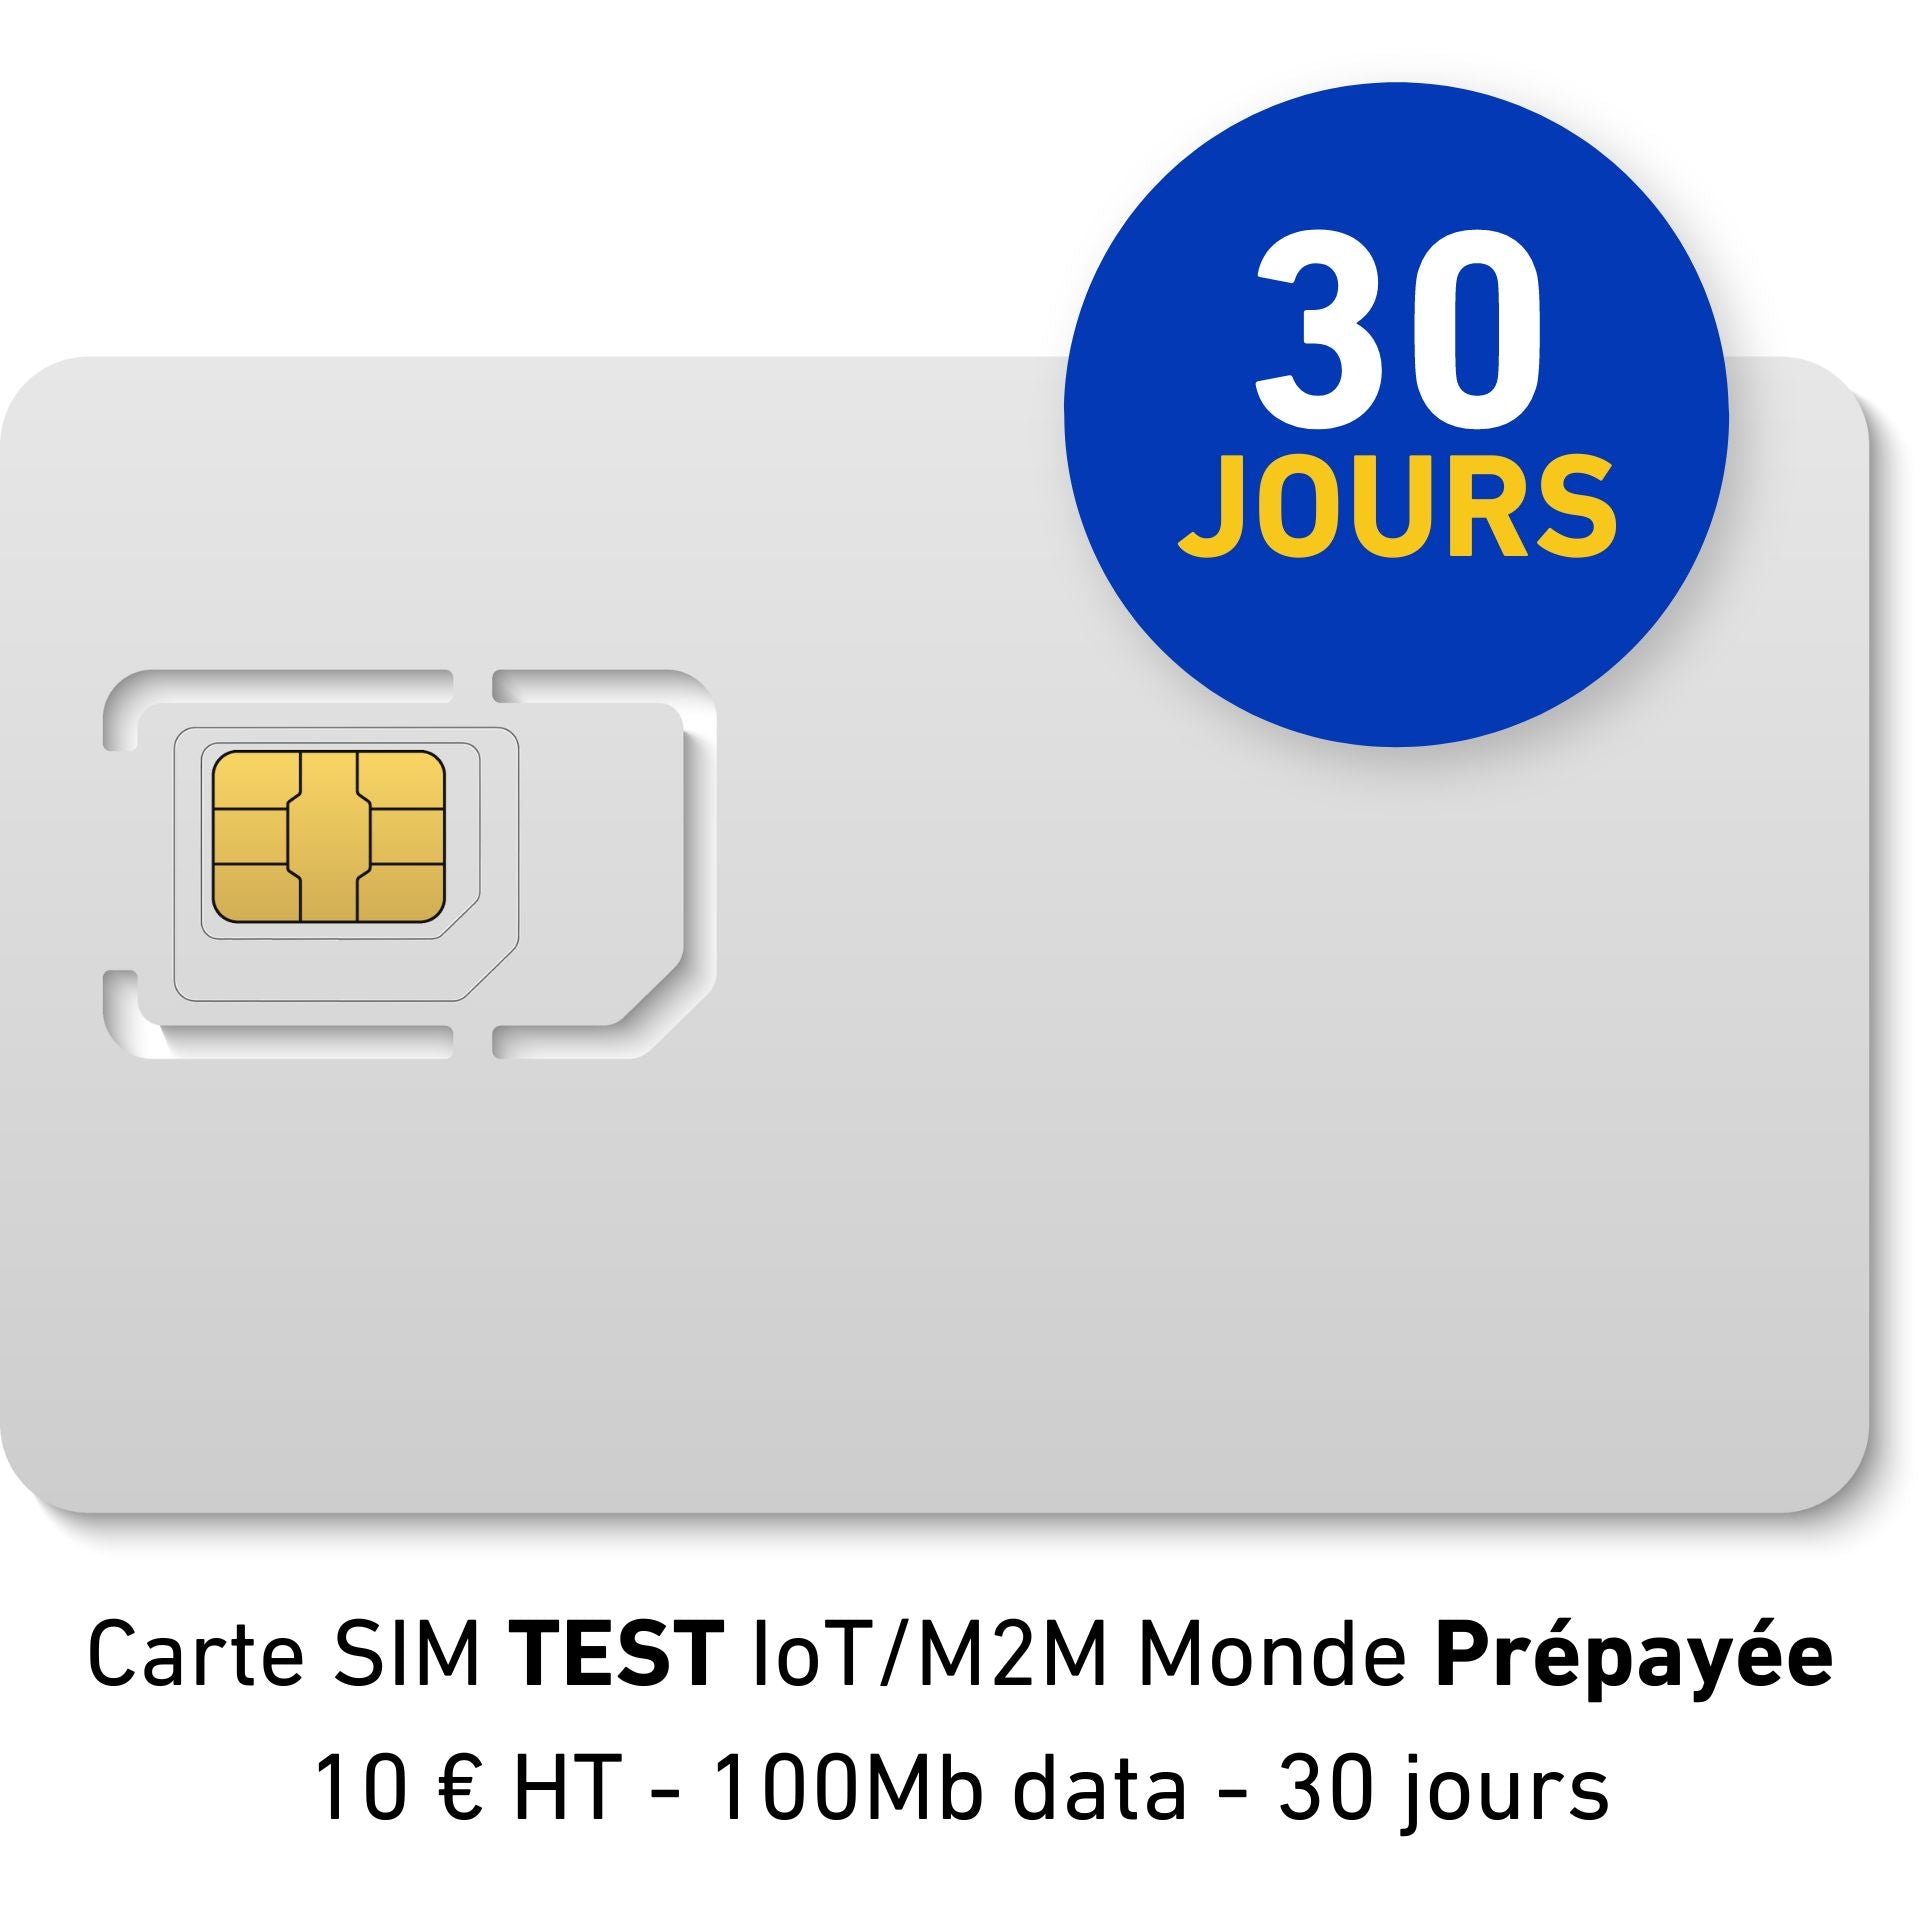 Carte SIM TEST IoT/M2M Monde Prépayée - 10 € HT - 100Mb data - 30 jours